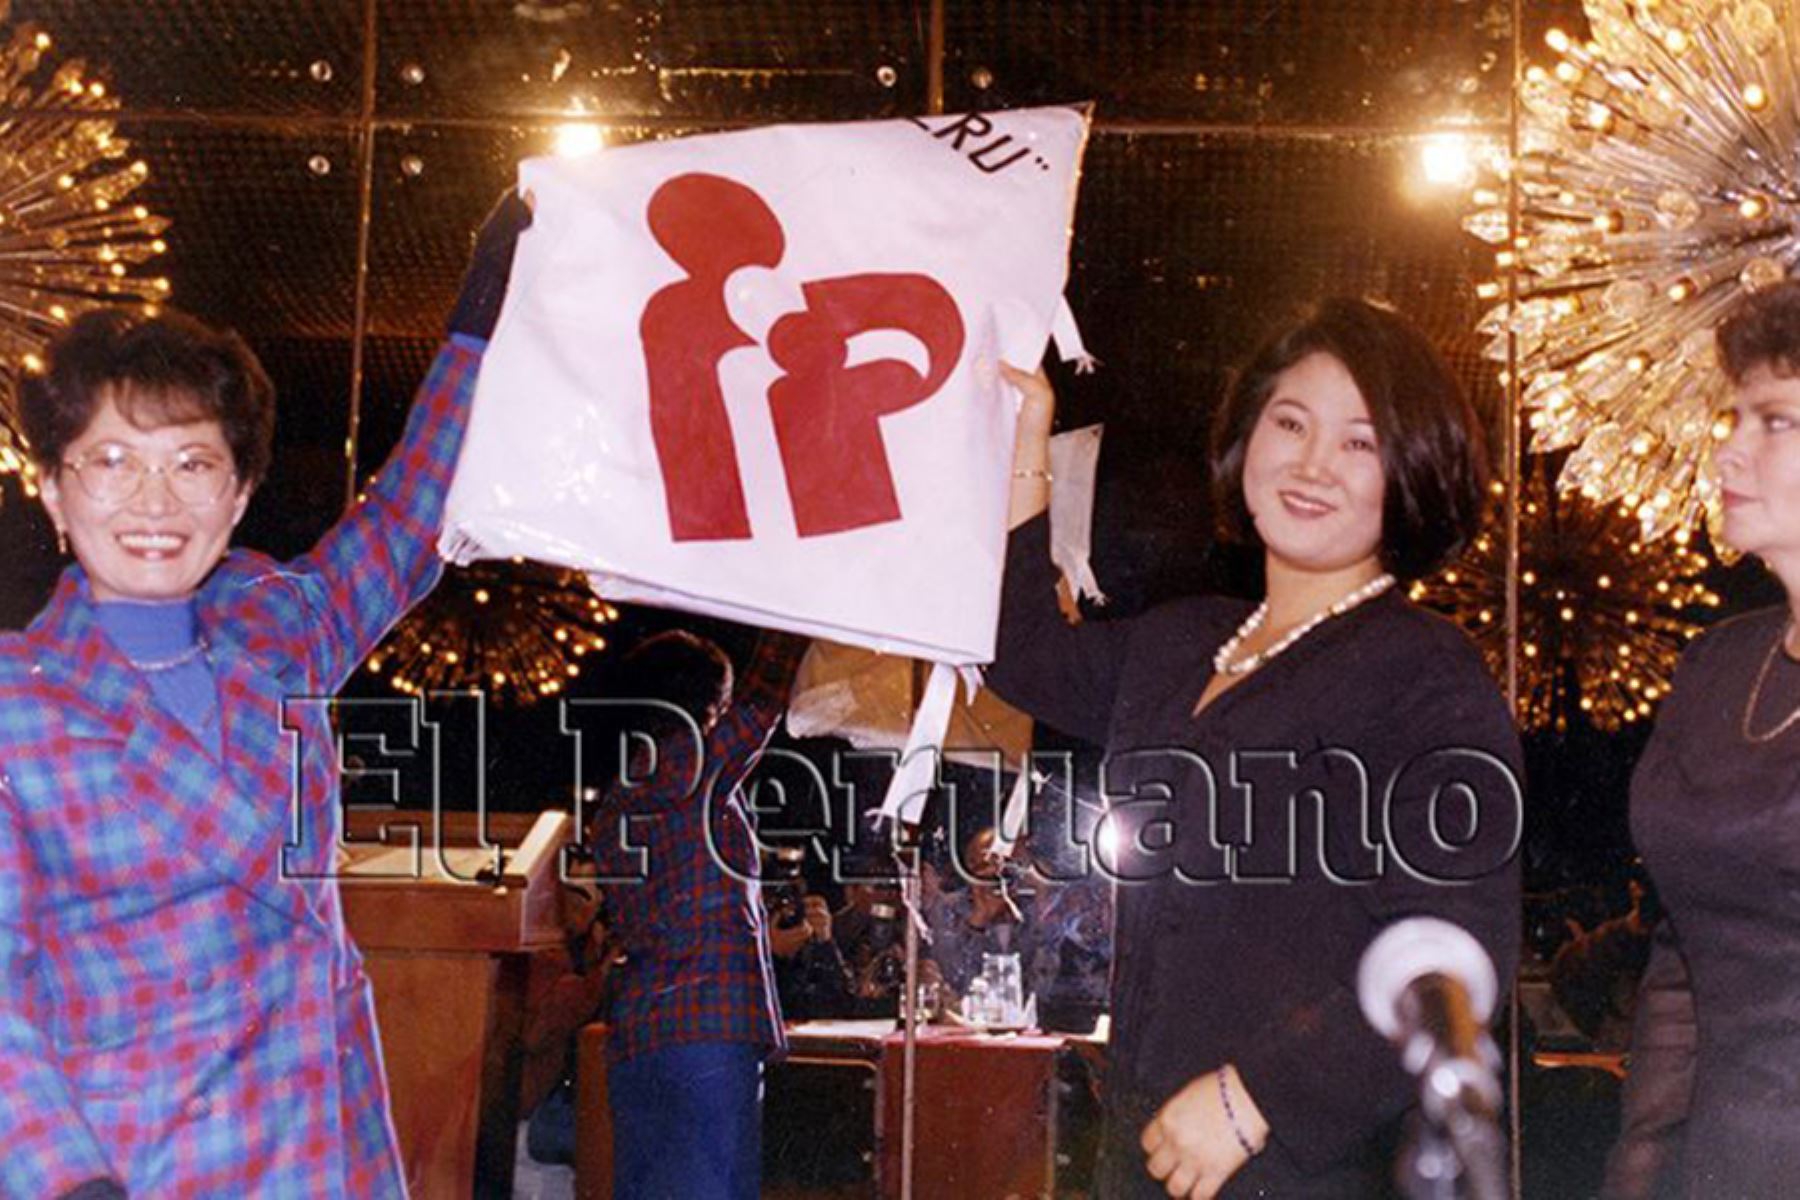 Lima - 15 agosto 1995 / La primera dama de la Nación, Keiko Sofía Fujimori, asume la presidencia de la Fundación por los Niños del Perú. Foto: Archivo Histórico de EL PERUANO